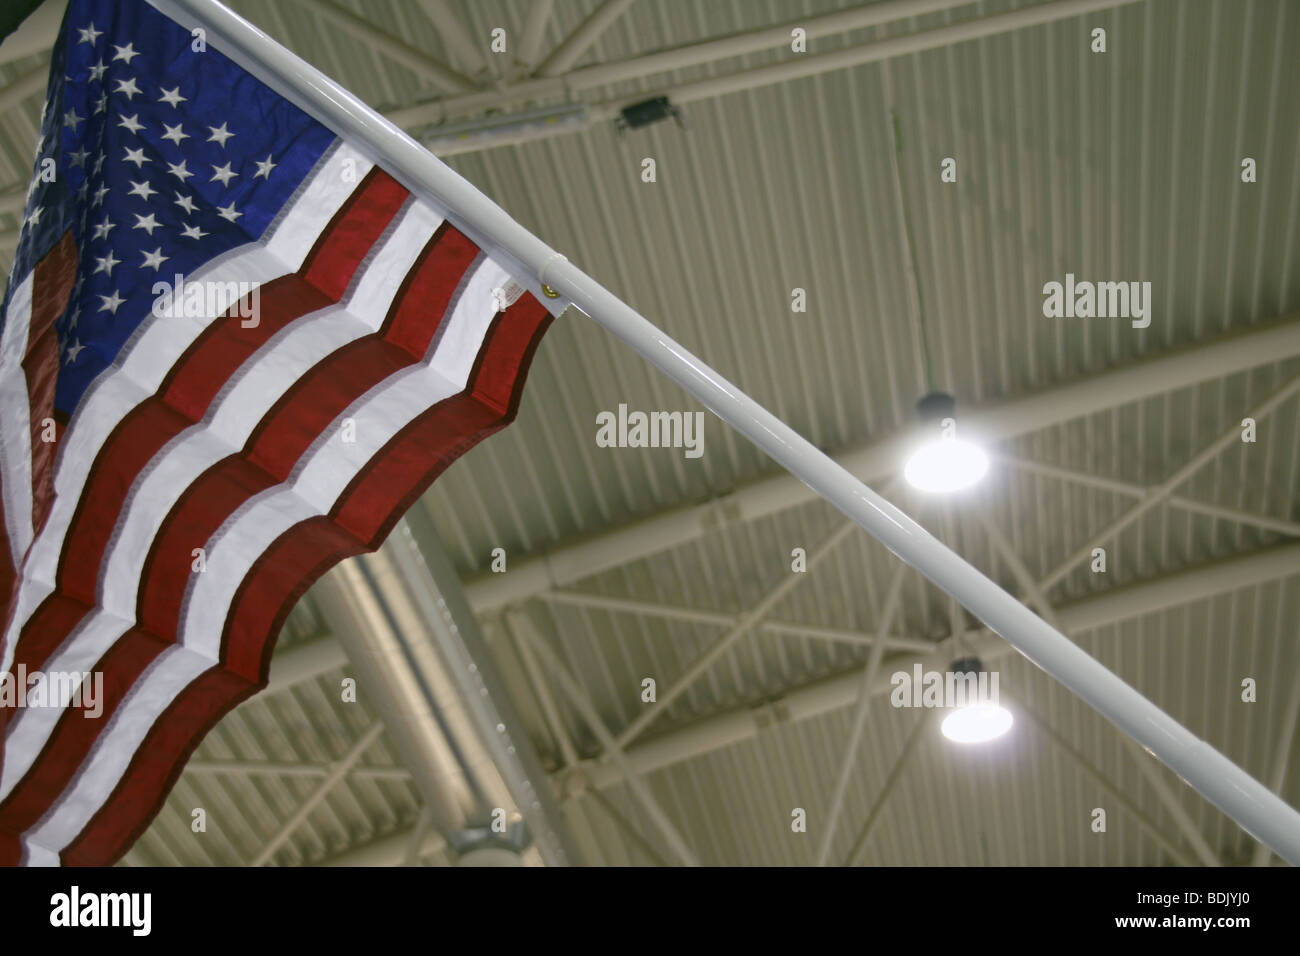 Bandiera americana all'interno di conferenze Centro espositivo Foto Stock